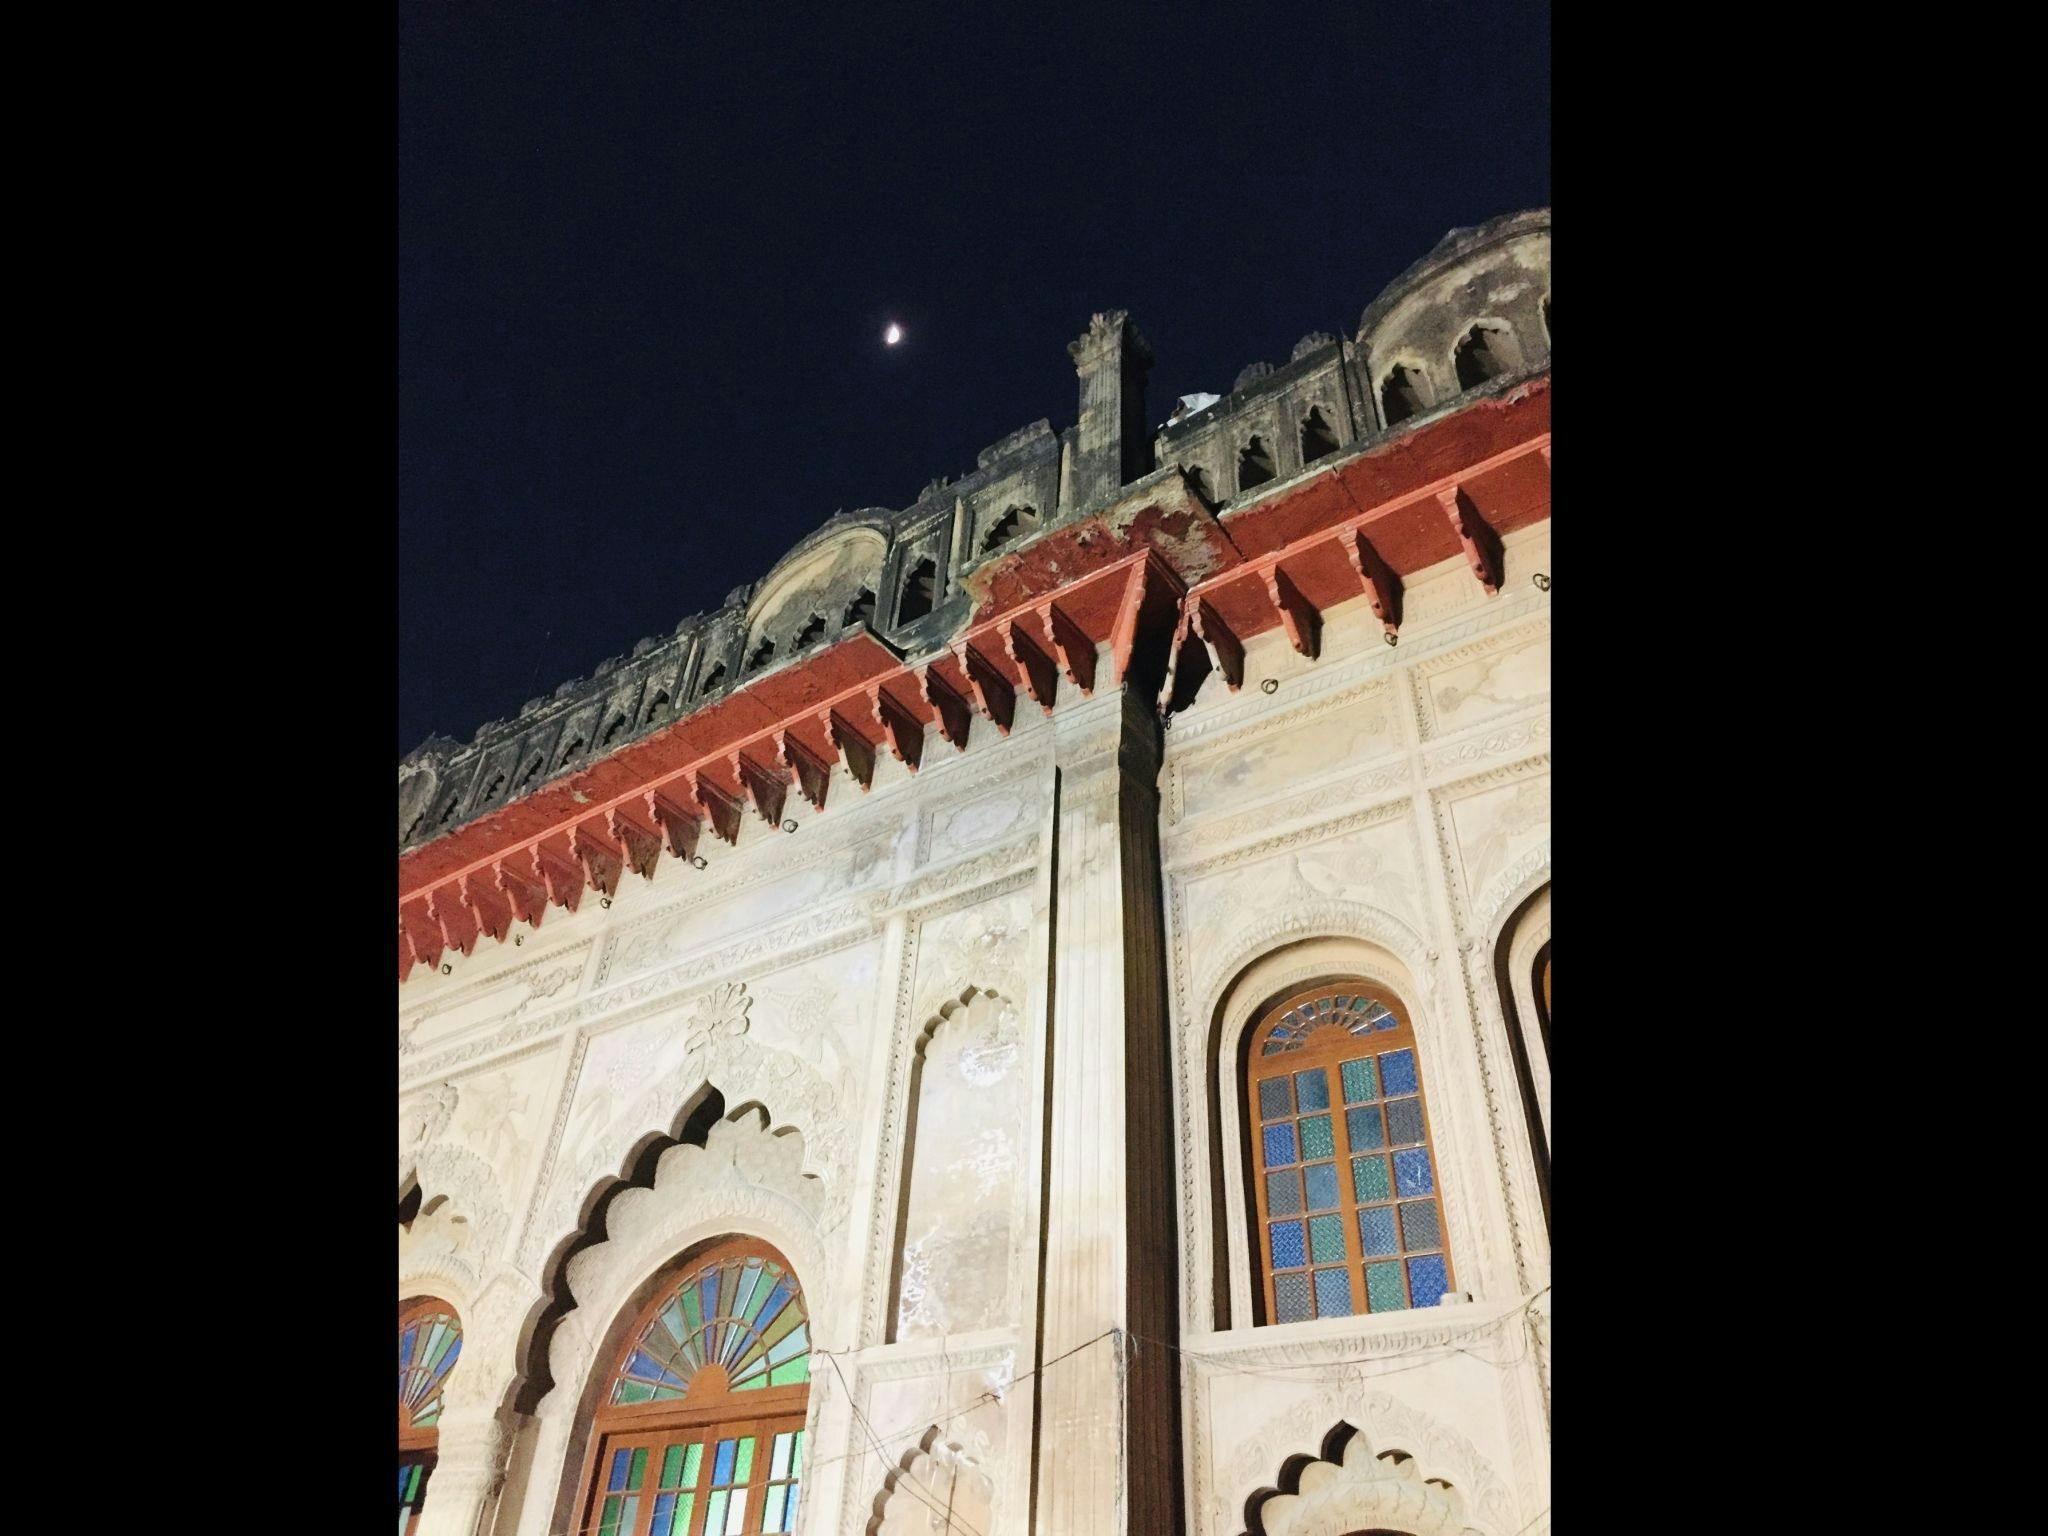 A view of the Imambara at night